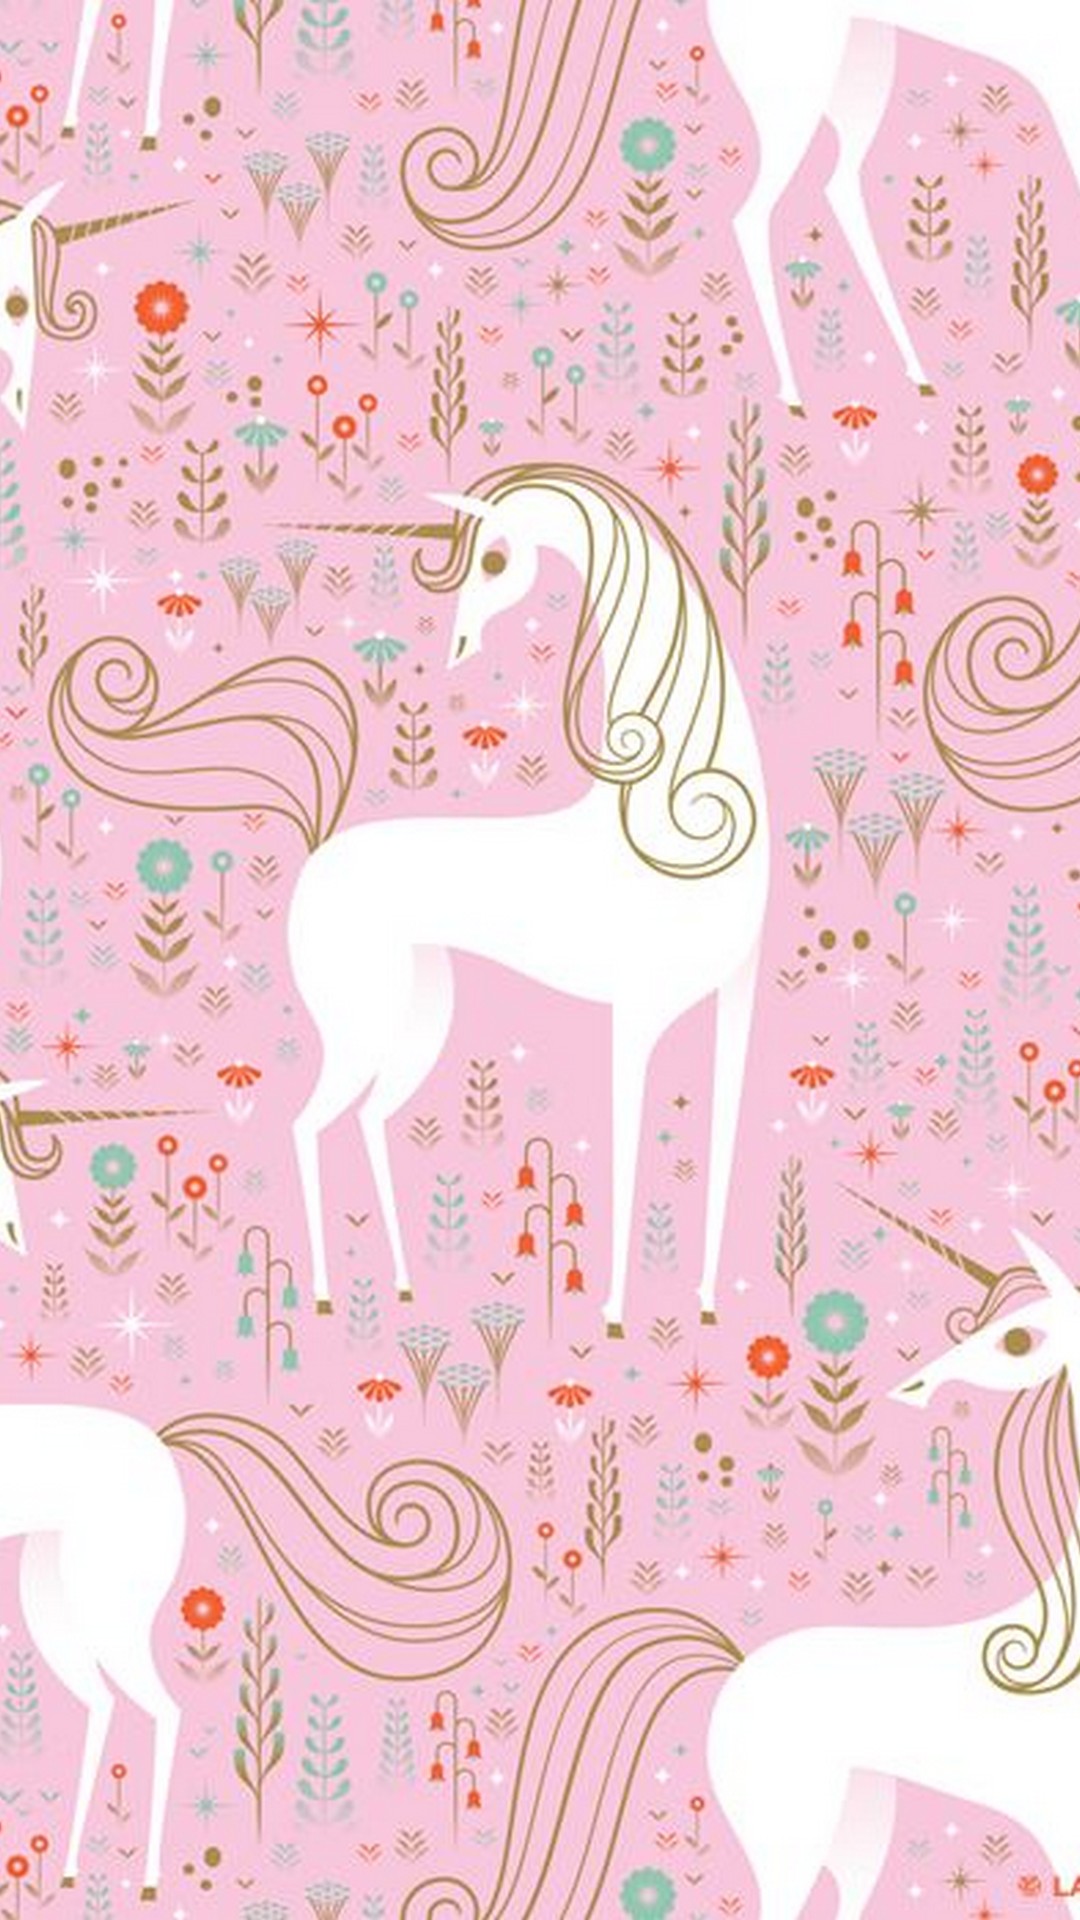 Cute Girly Unicorn Iphone Screen Lock Wallpaper 2020 Cute Iphone Wallpaper